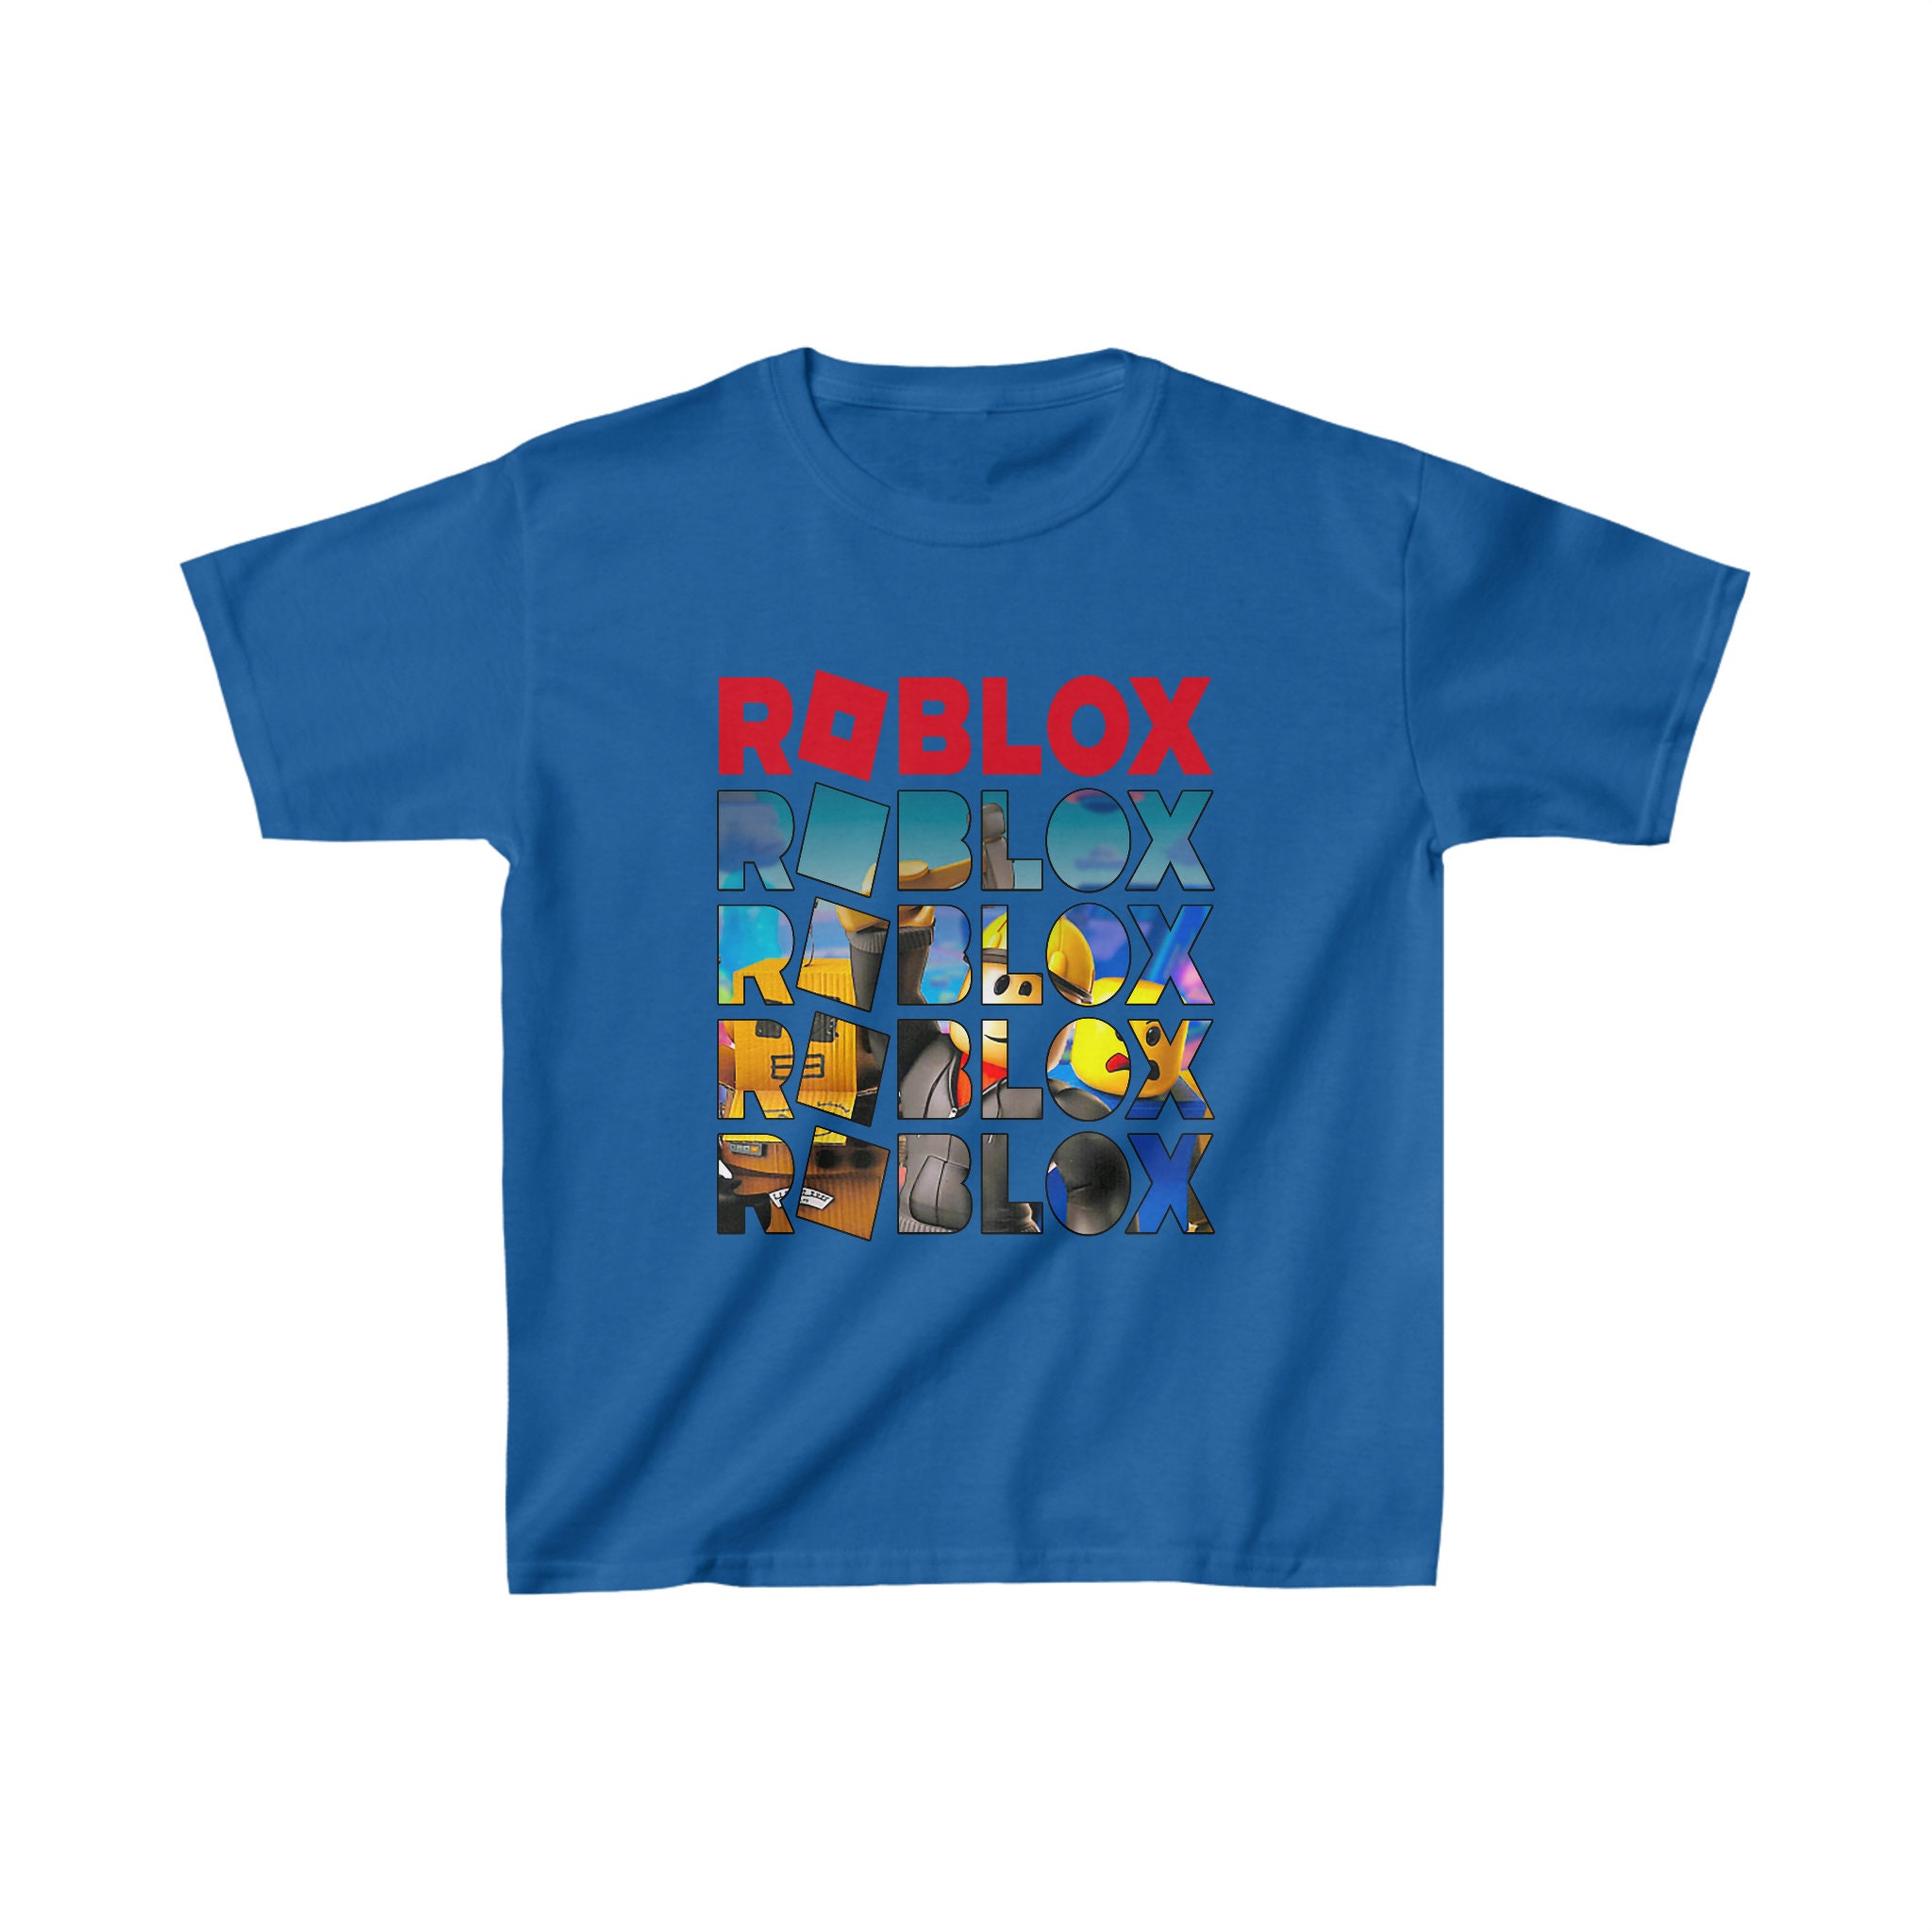 Boy's T-Shirts - Lot of 3 - Size XXL Star Wars Roblox Cinnamon